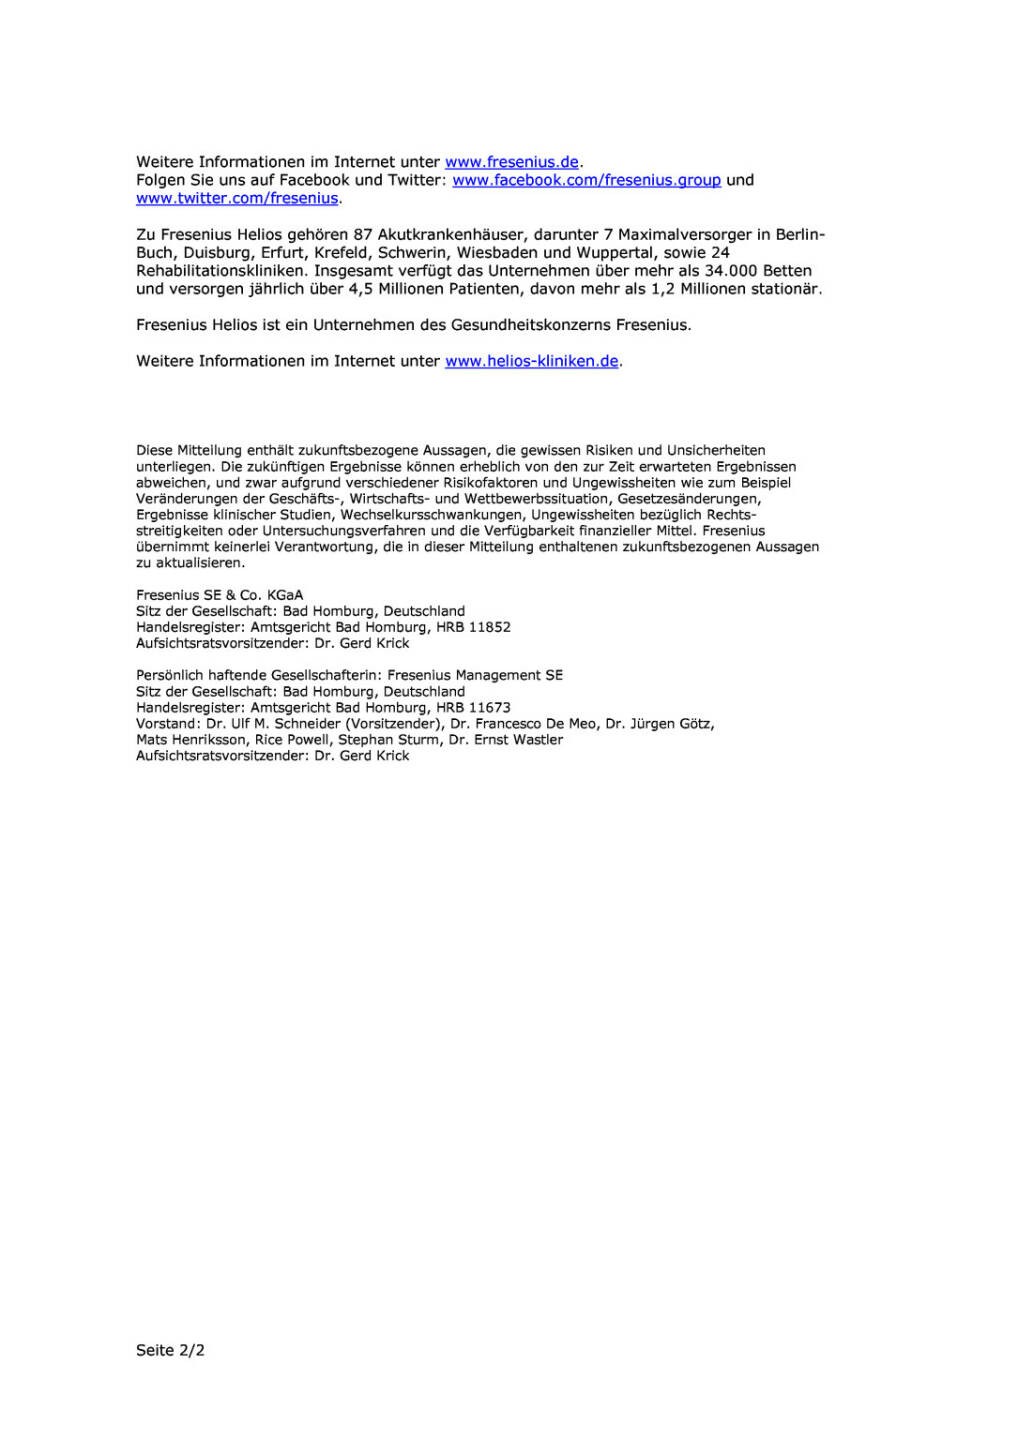 Fresenius erwirbt Klinik in NRW, Seite 2/2, komplettes Dokument unter http://boerse-social.com/static/uploads/file_667_fresenius_erwirbt_klinik_in_nrw.pdf